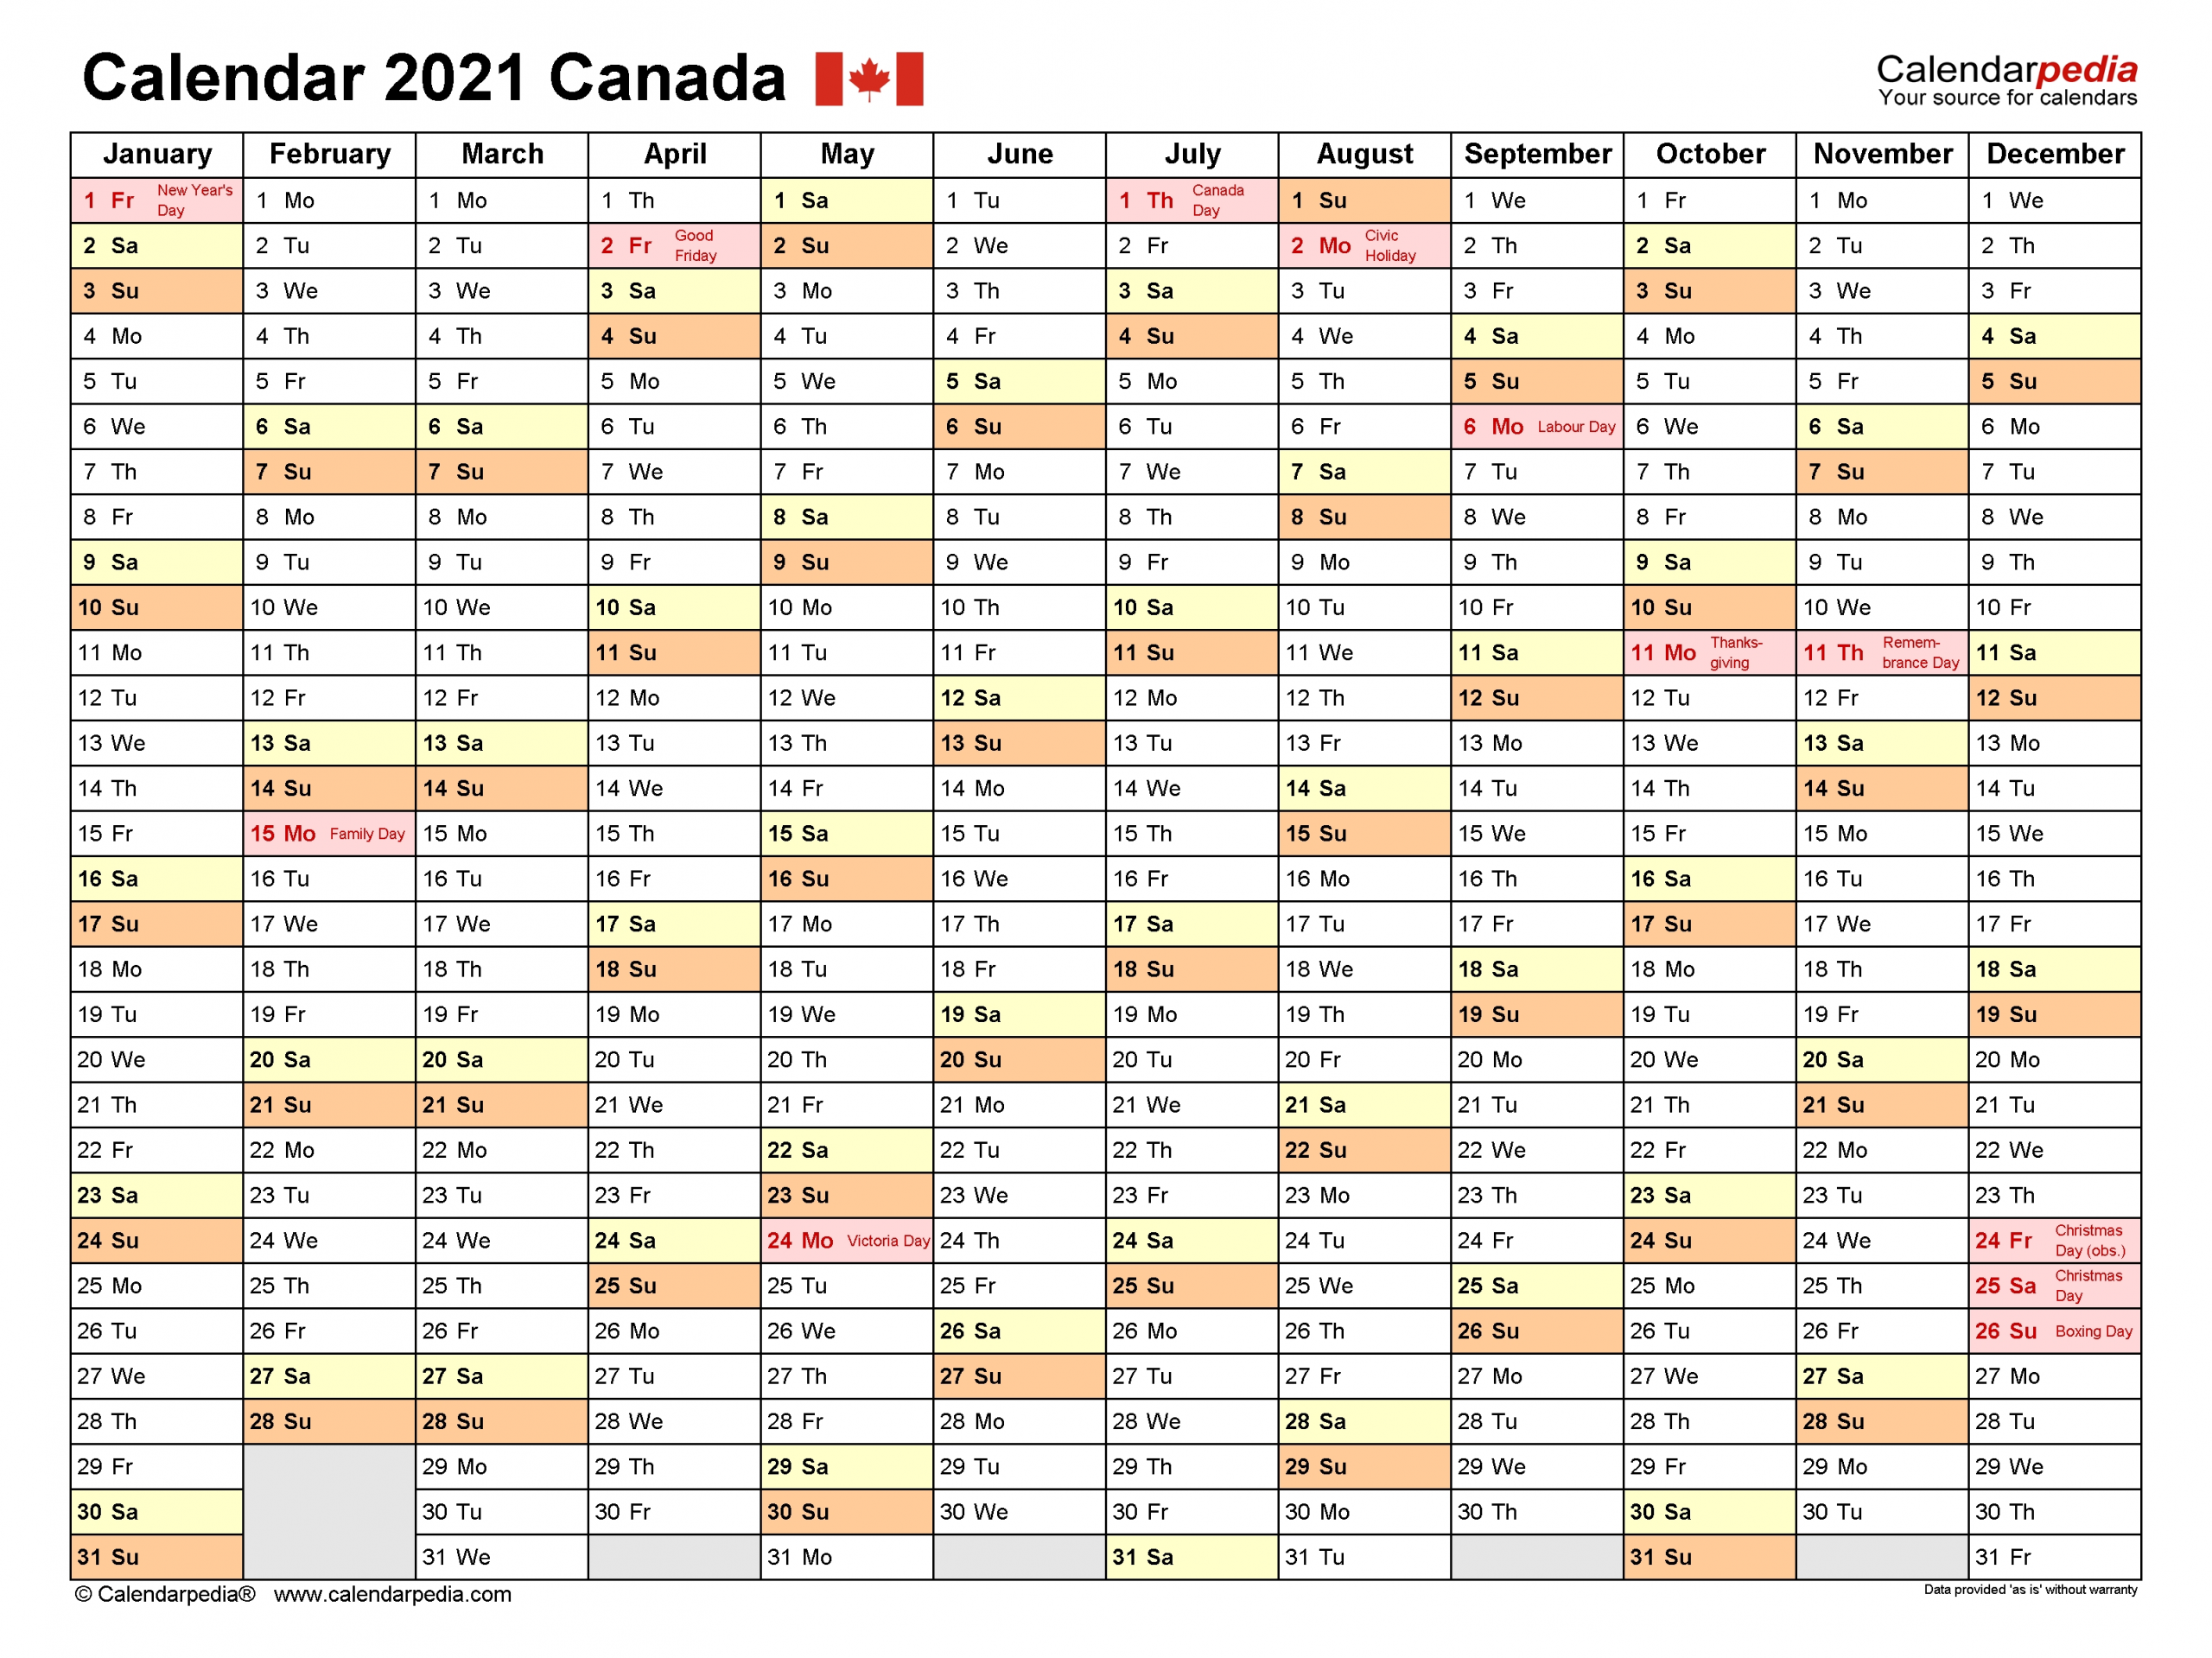 Canada Calendar 2021 - Free Printable Excel Templates-Printable Employee Vacation Calendar 2021